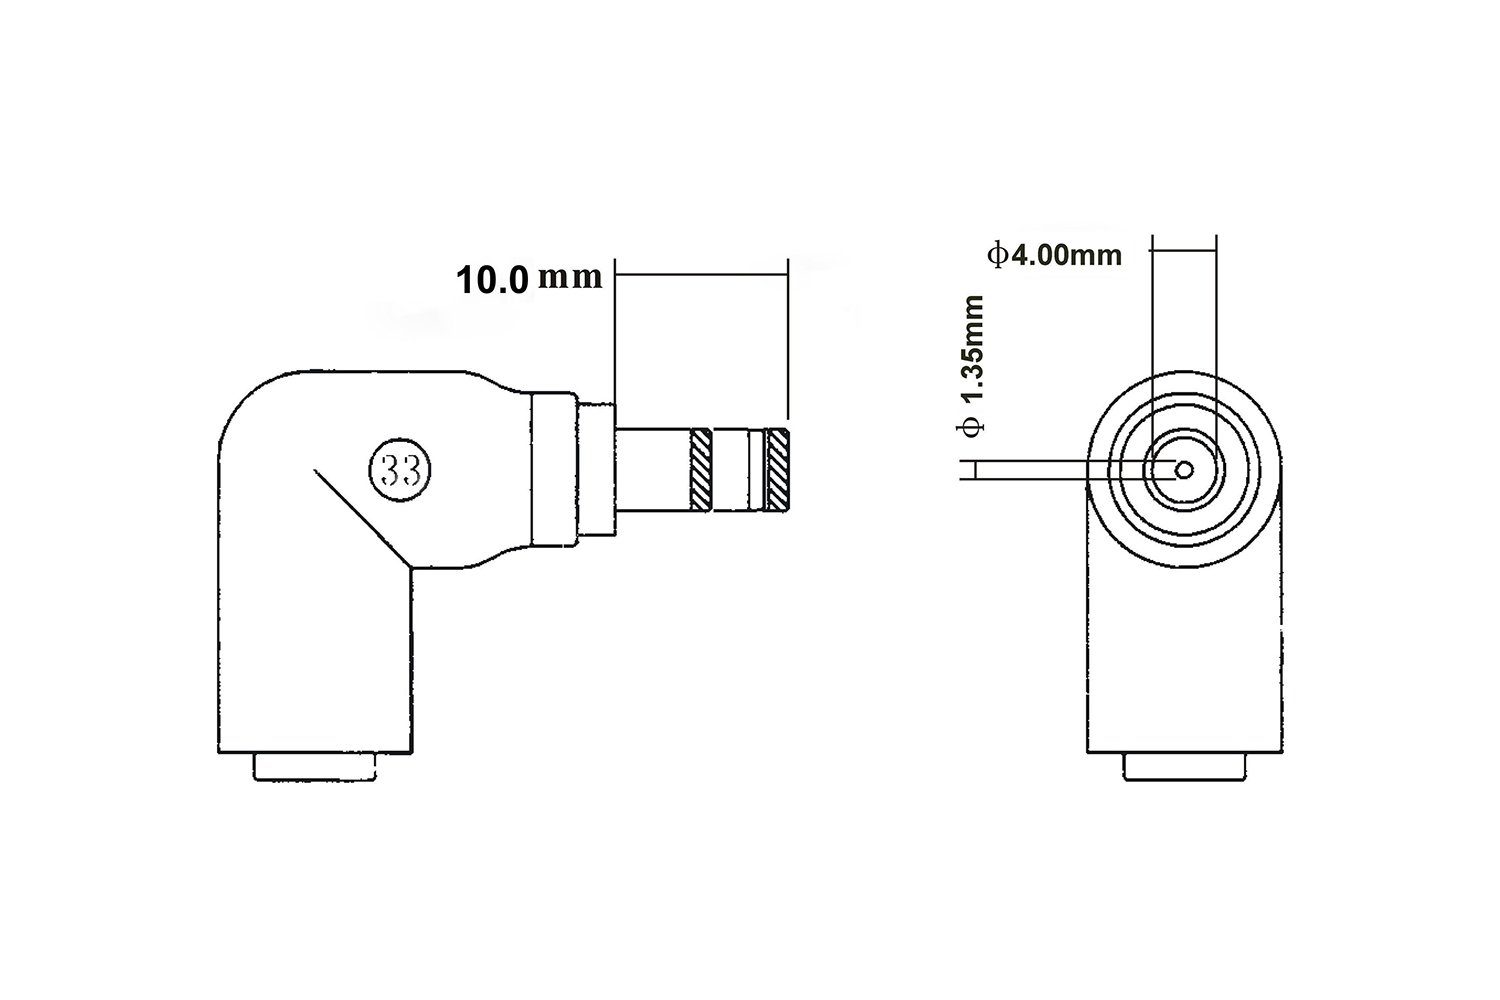 HEAD33N C33-Steckerspitze – mm x Buchse Batterie-Verbindungskabel, PowerSmart 4,0 1,35 5,5 x 2,5 mm Stecker auf